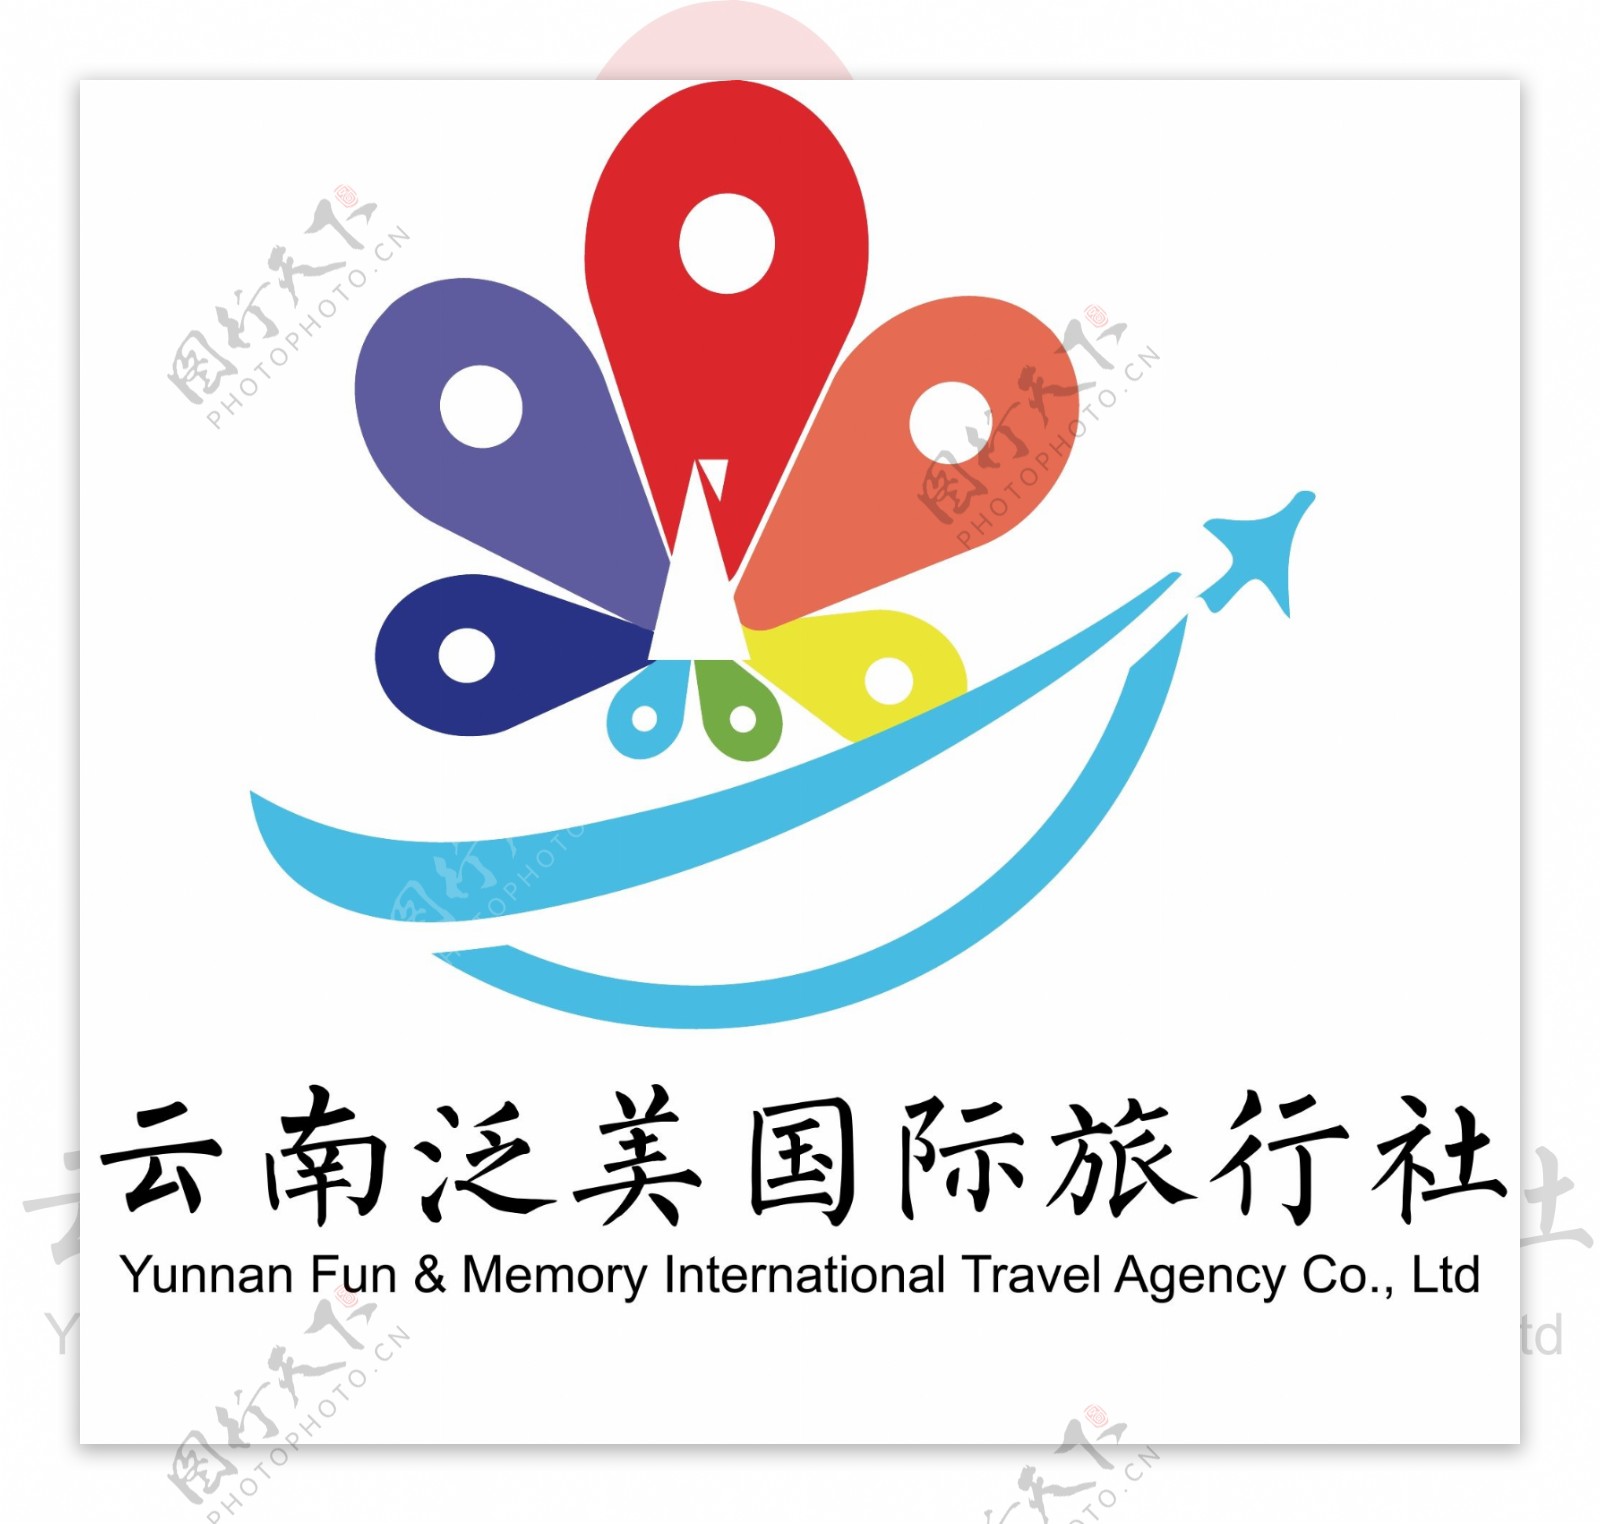 旅行社logo云南地区旅行社